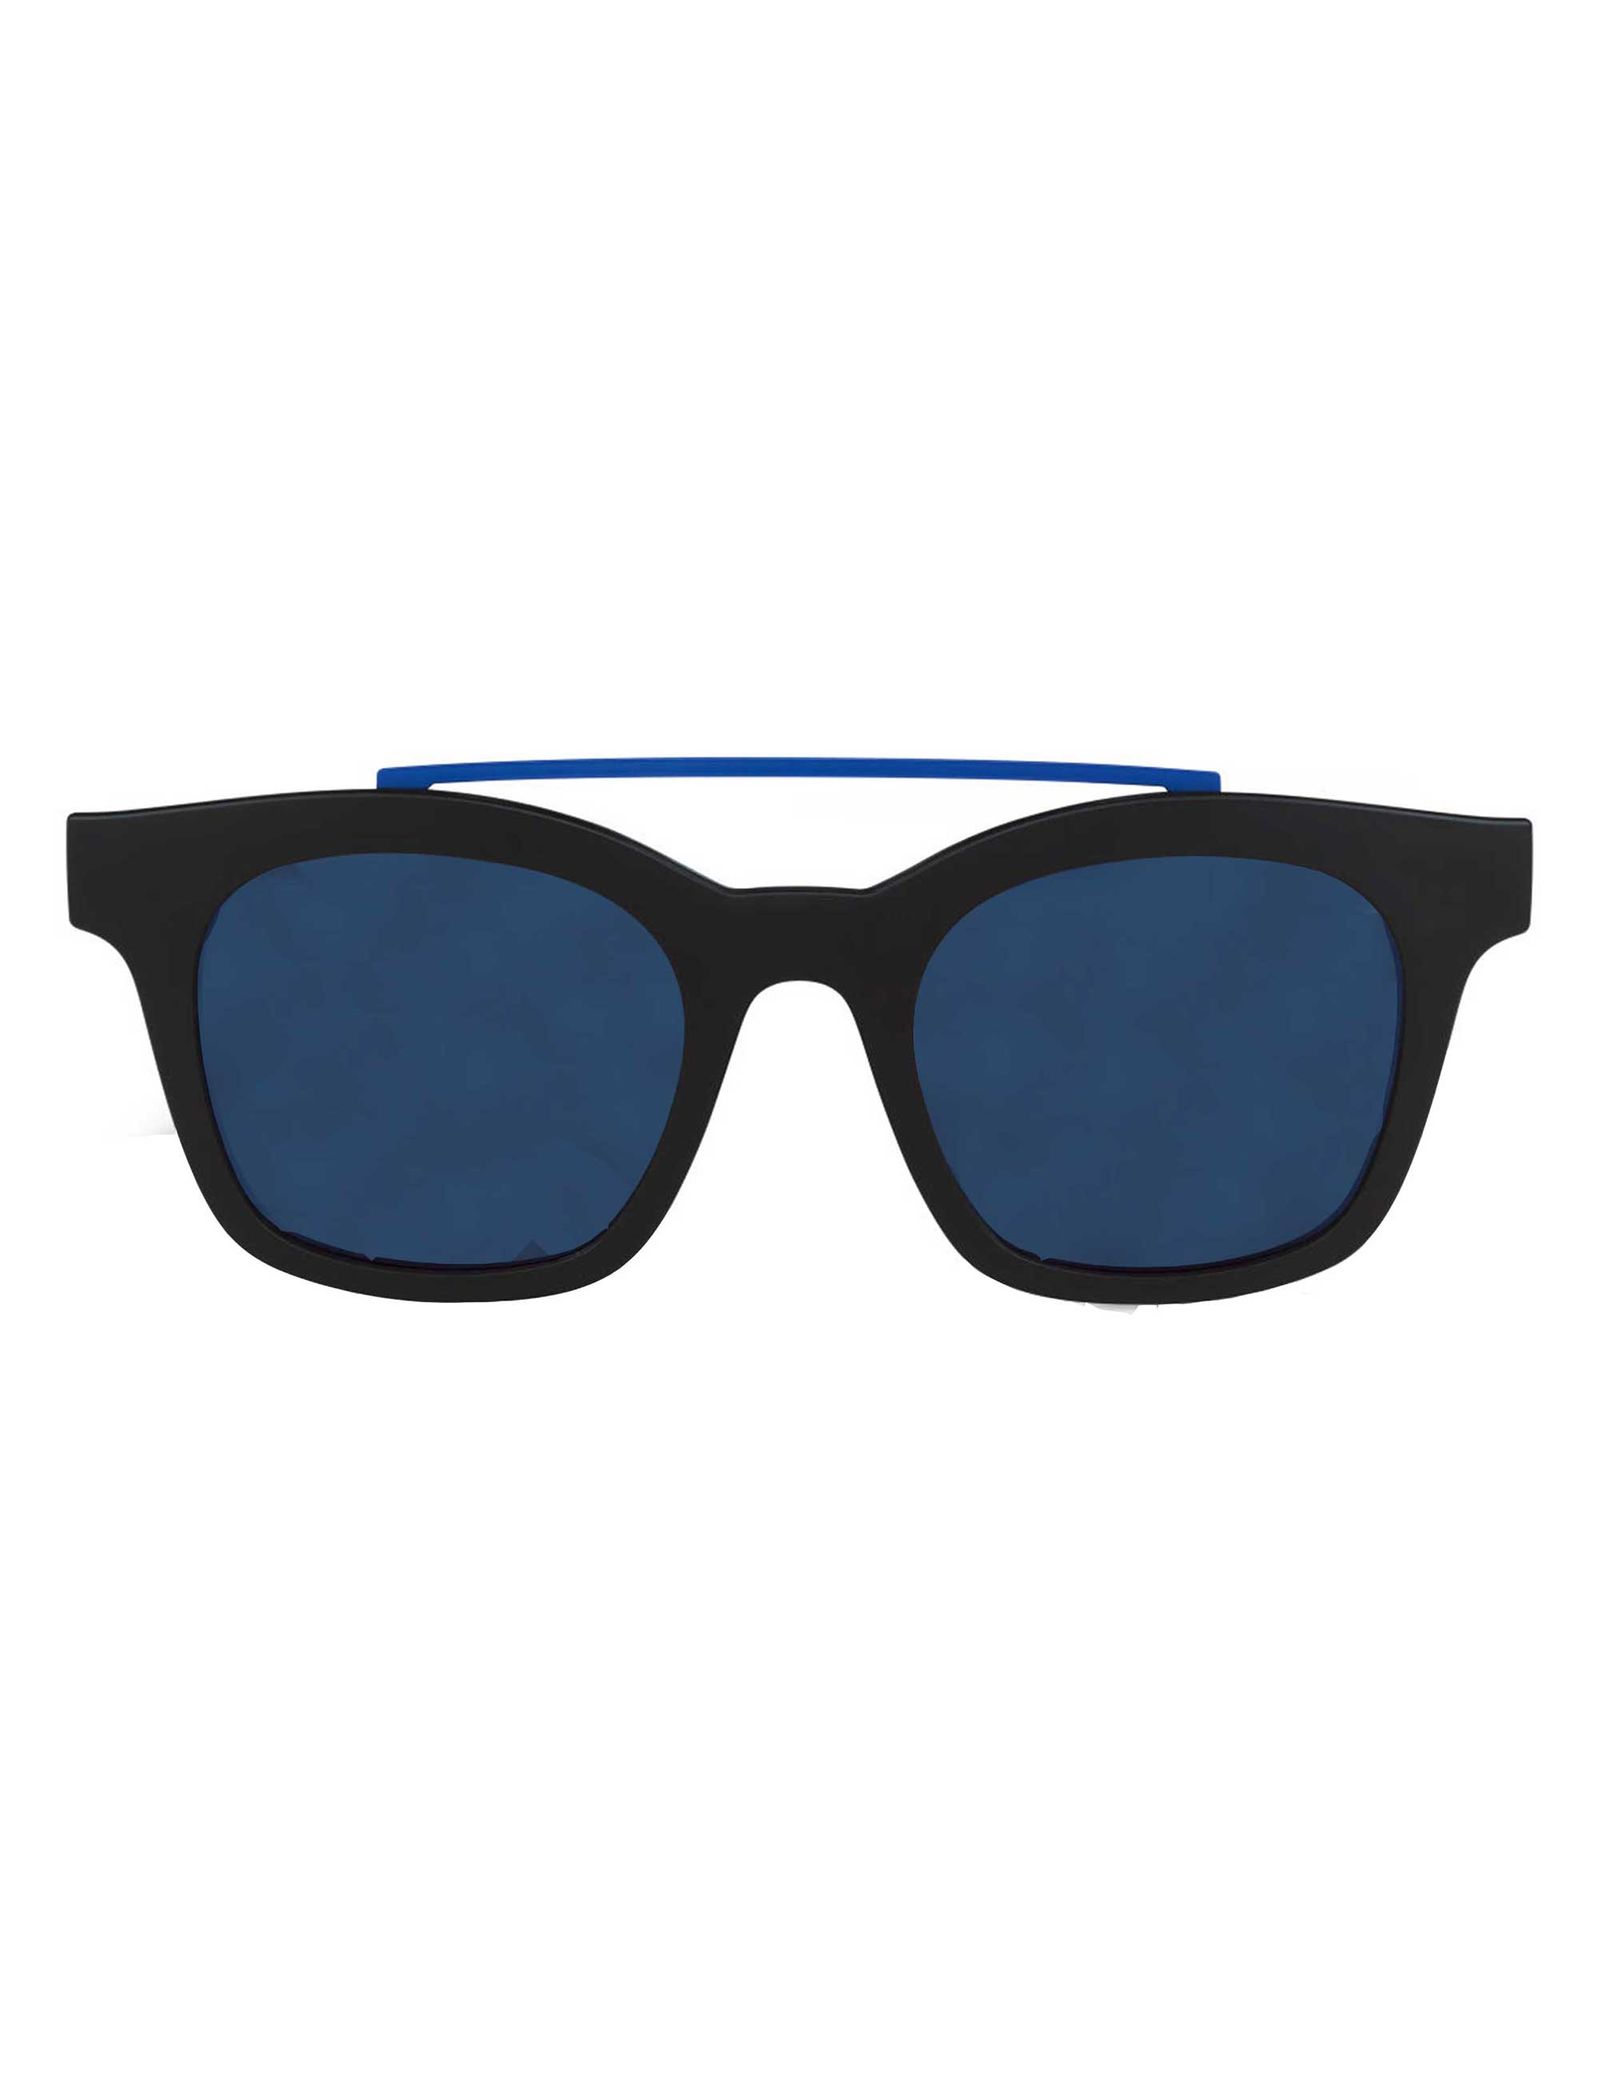 عینک آفتابی سواچ مدل SES05SMB001 - مشکی - 2